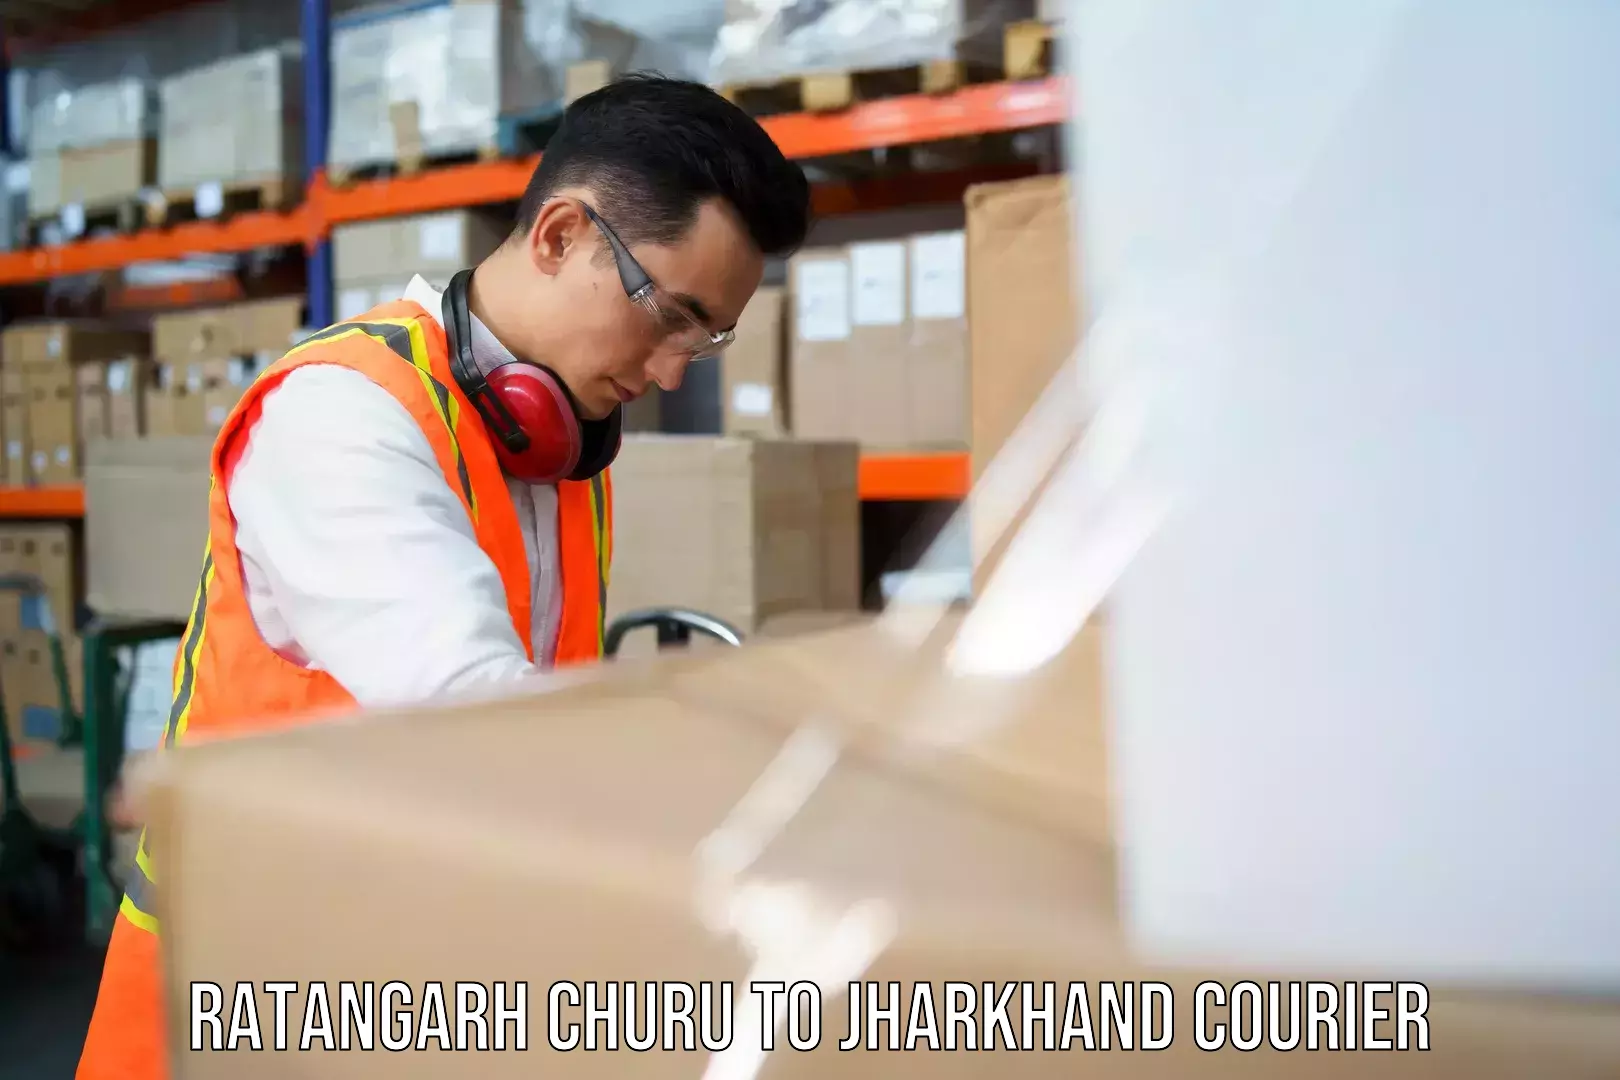 High-priority parcel service Ratangarh Churu to Chakradharpur